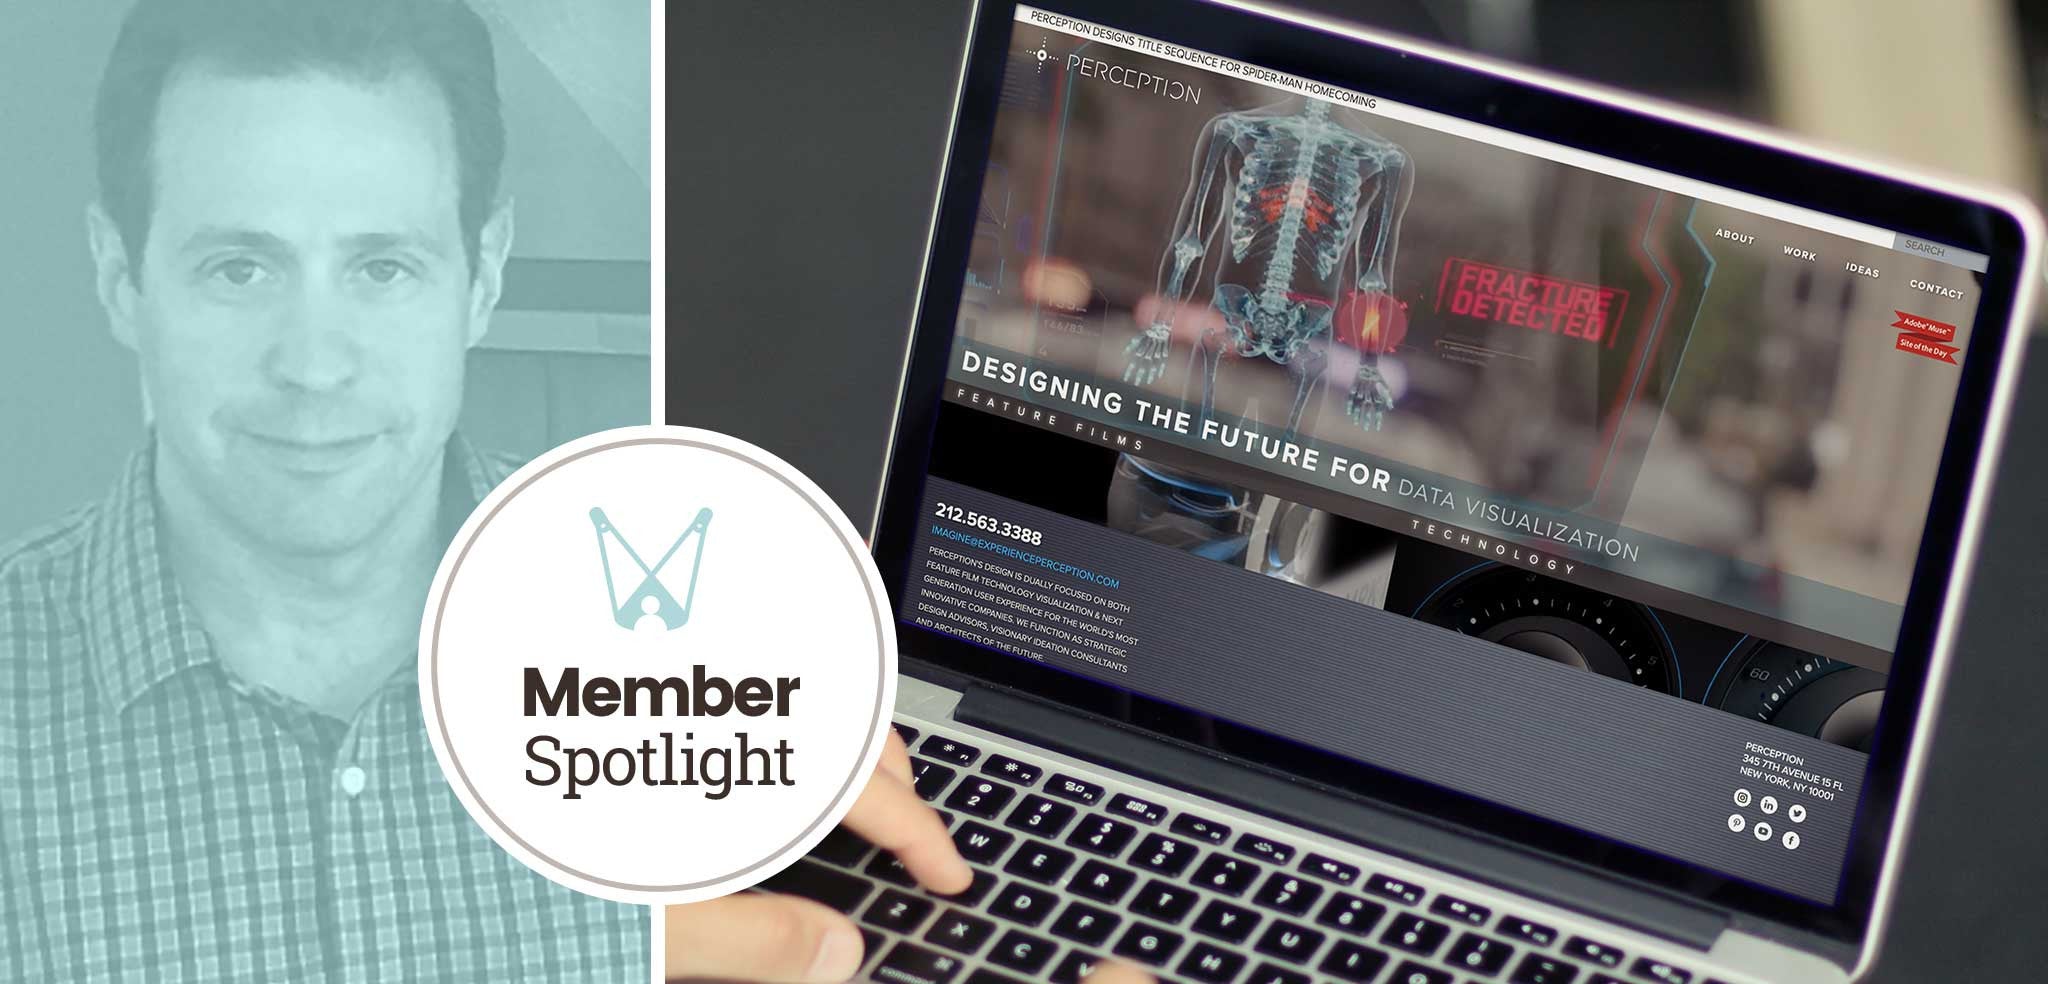 Member Spotlight - Jeremy Lasky, Perception Media Corp